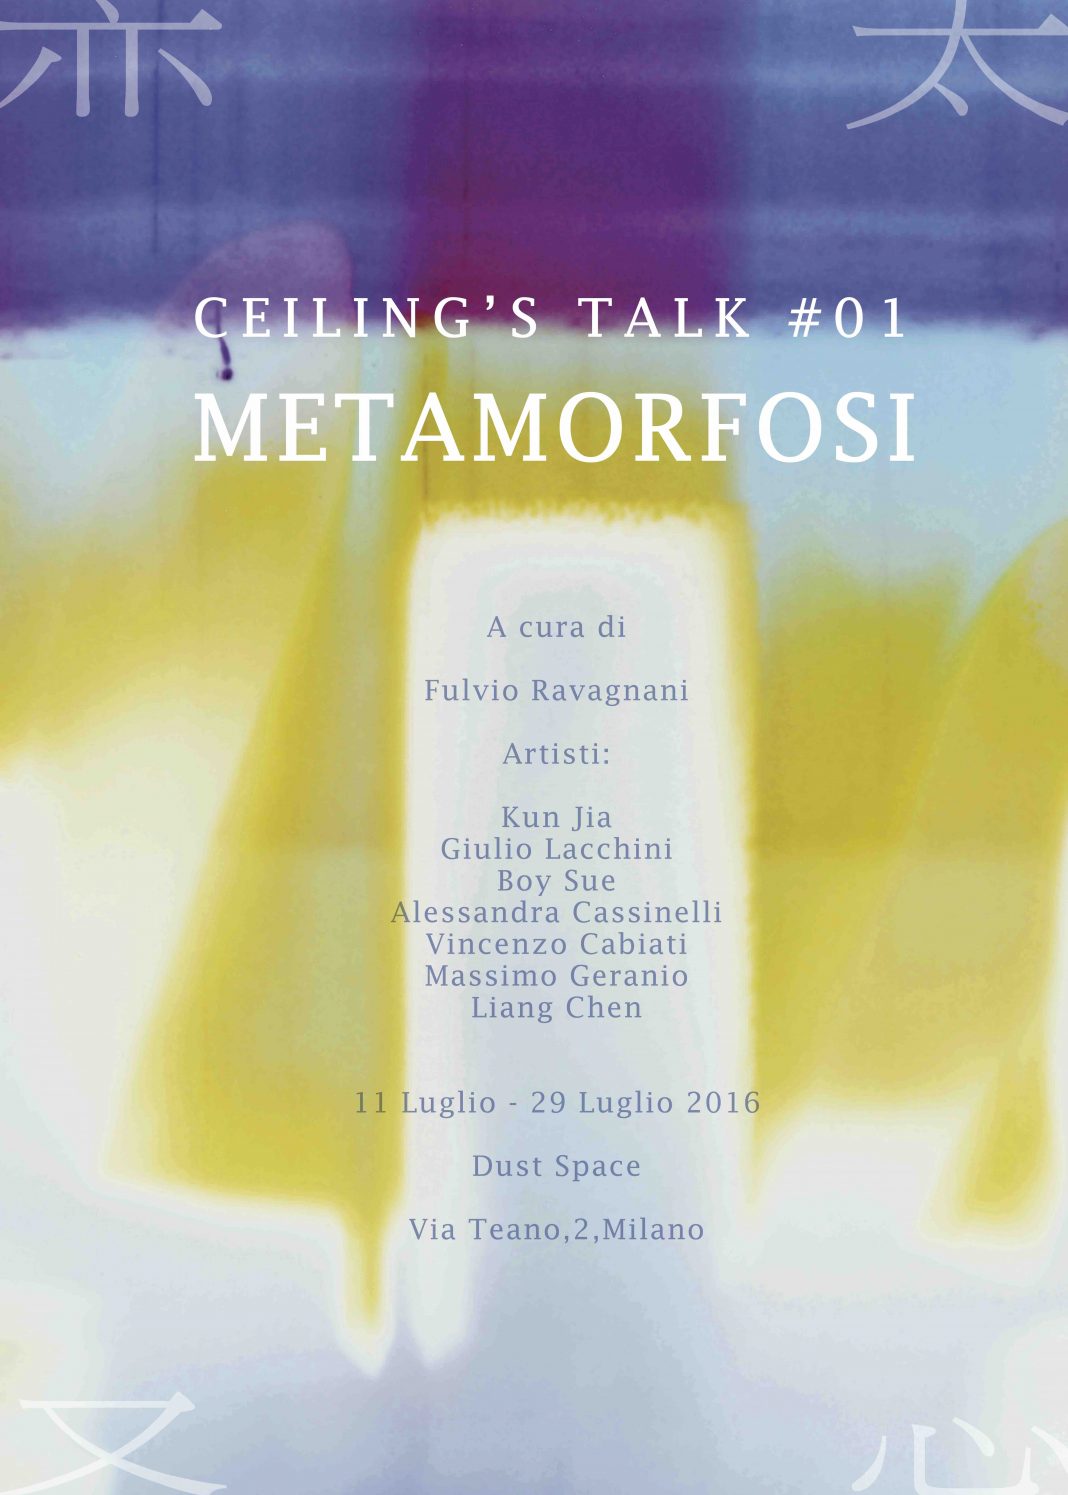 Ceiling’s Talk Vol1 – Metamorfosihttps://www.exibart.com/repository/media/eventi/2016/07/ceiling’s-talk-vol1-8211-metamorfosi-1068x1495.jpg